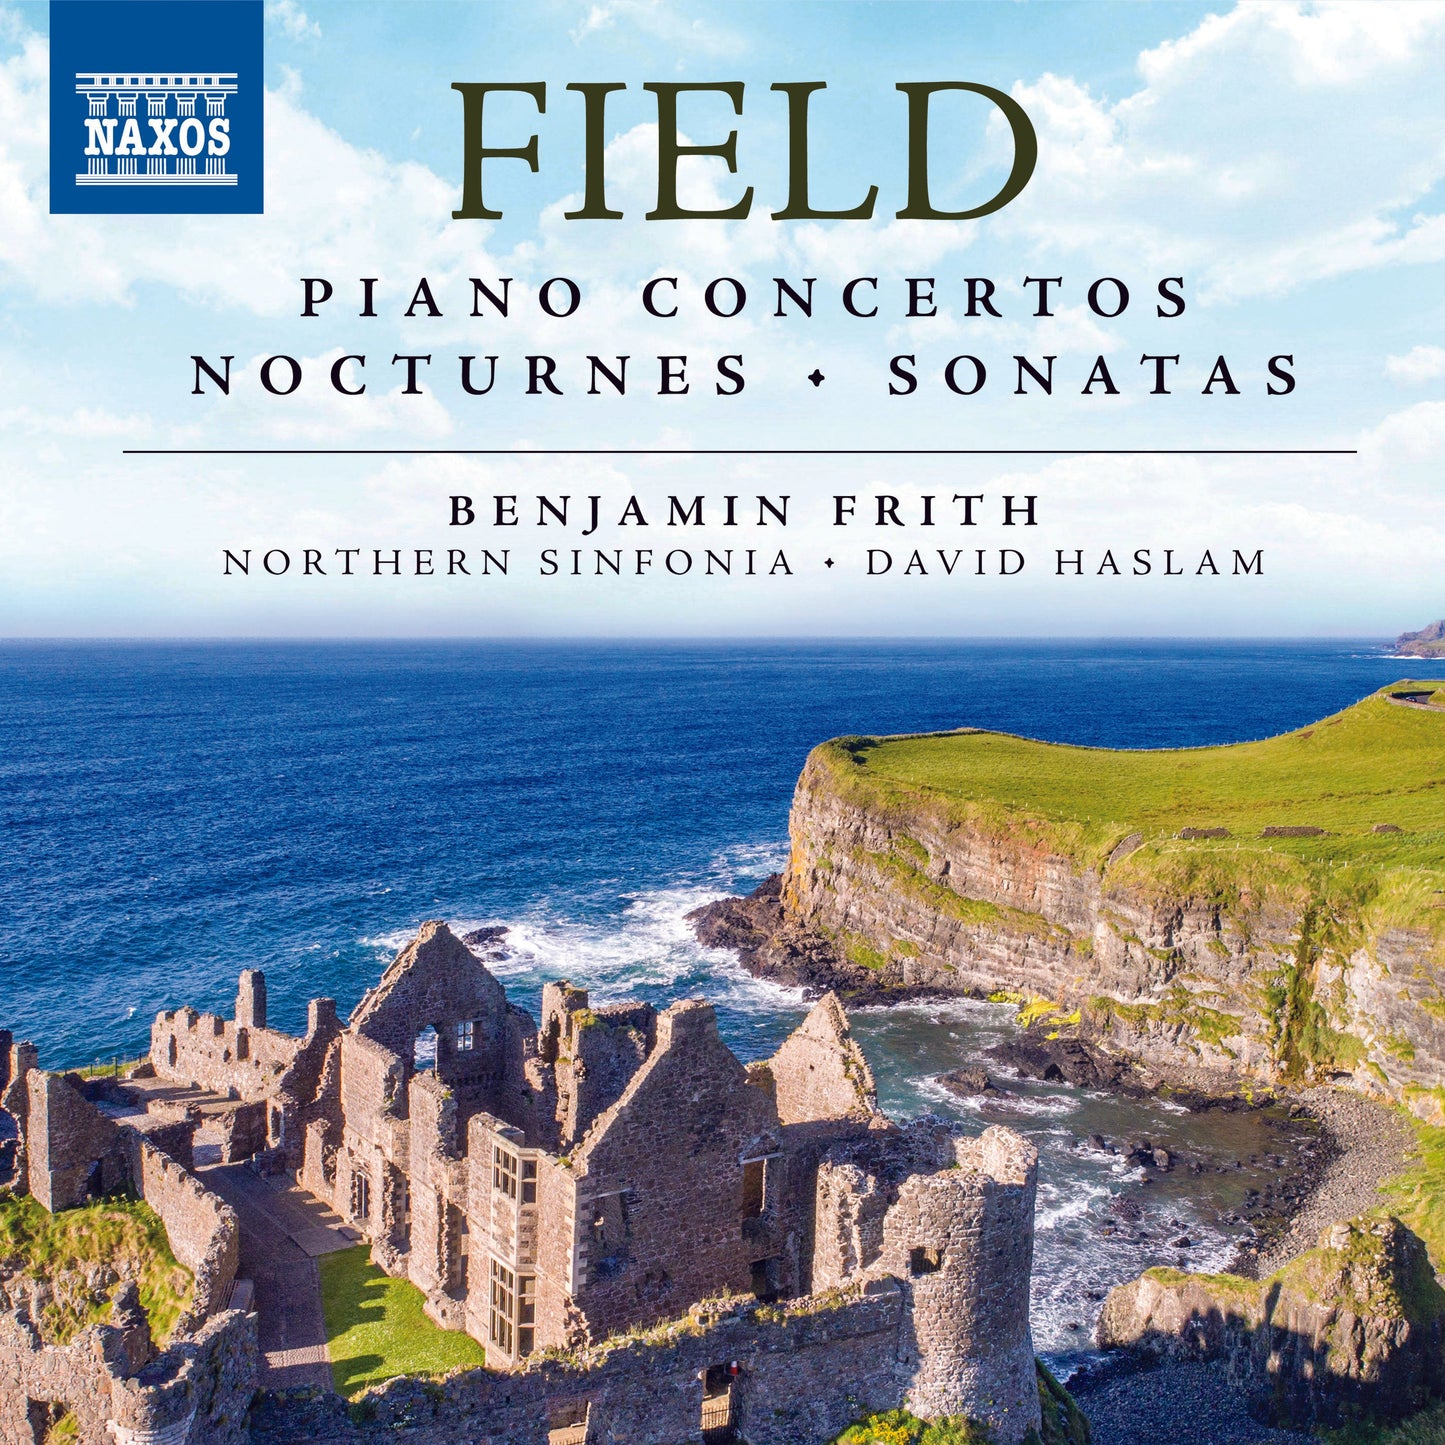 Field: Piano Concertos, Nocturnes & Sonatas